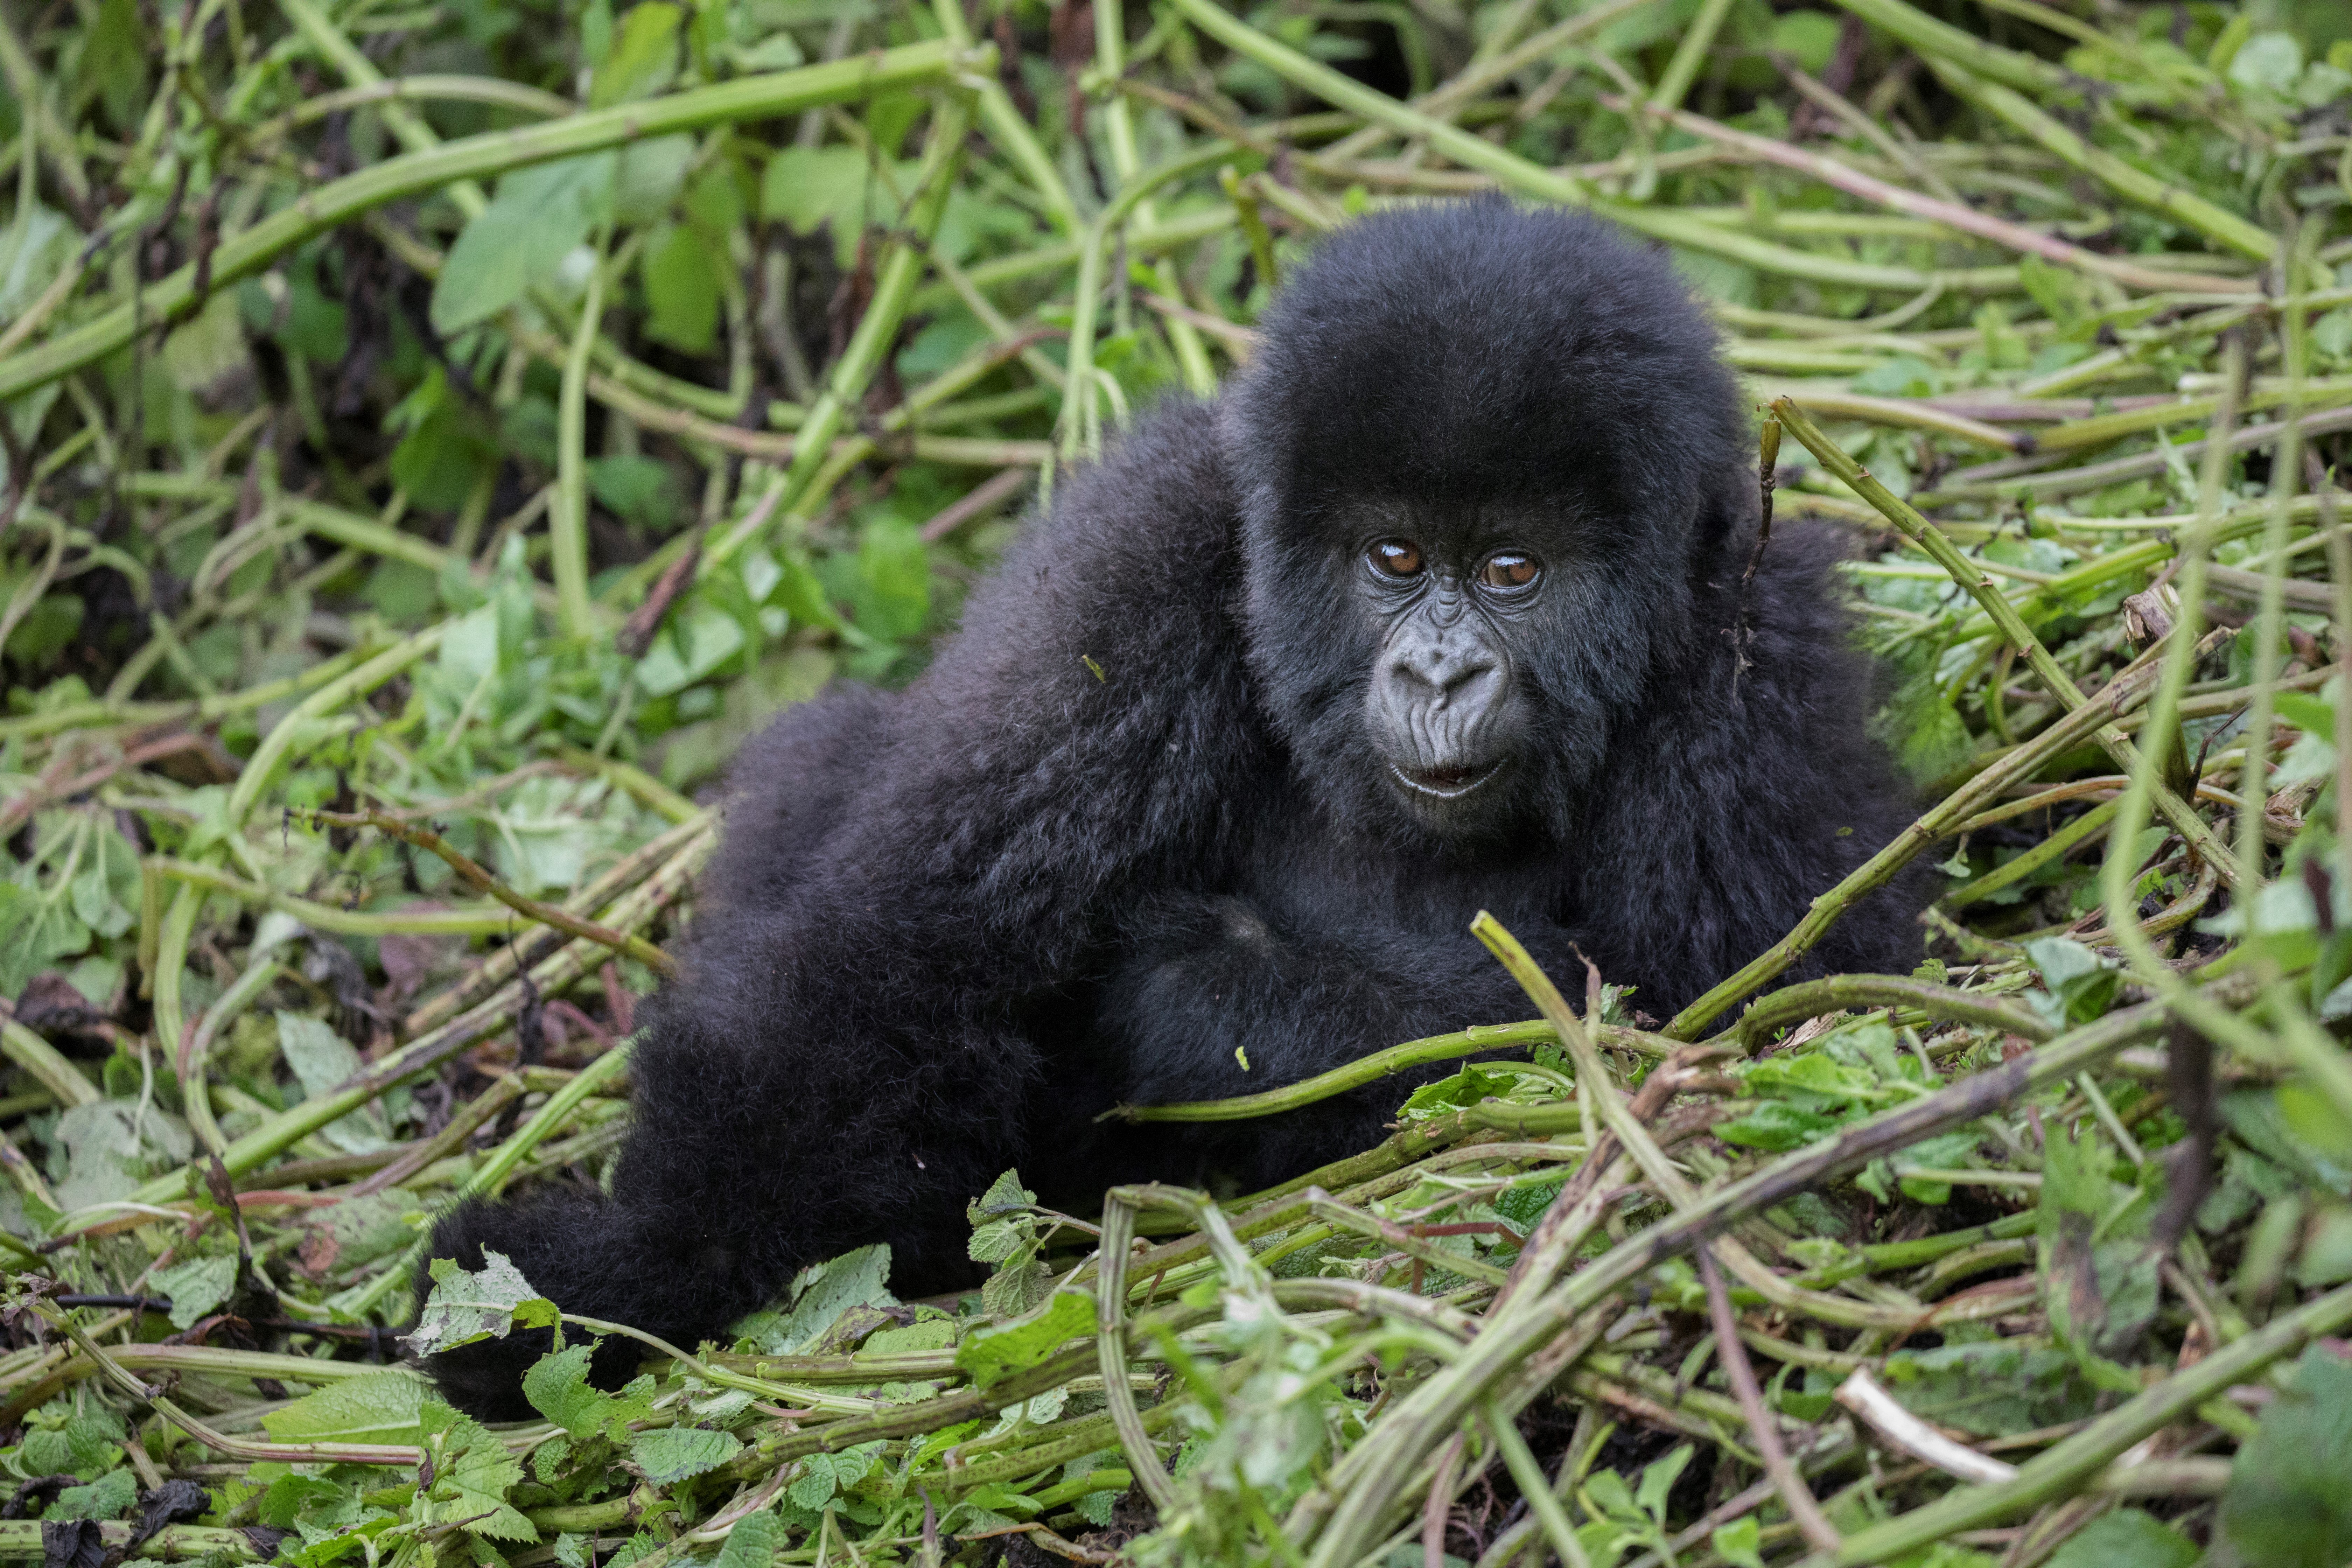 a baby mountain gorilla poses for a photo